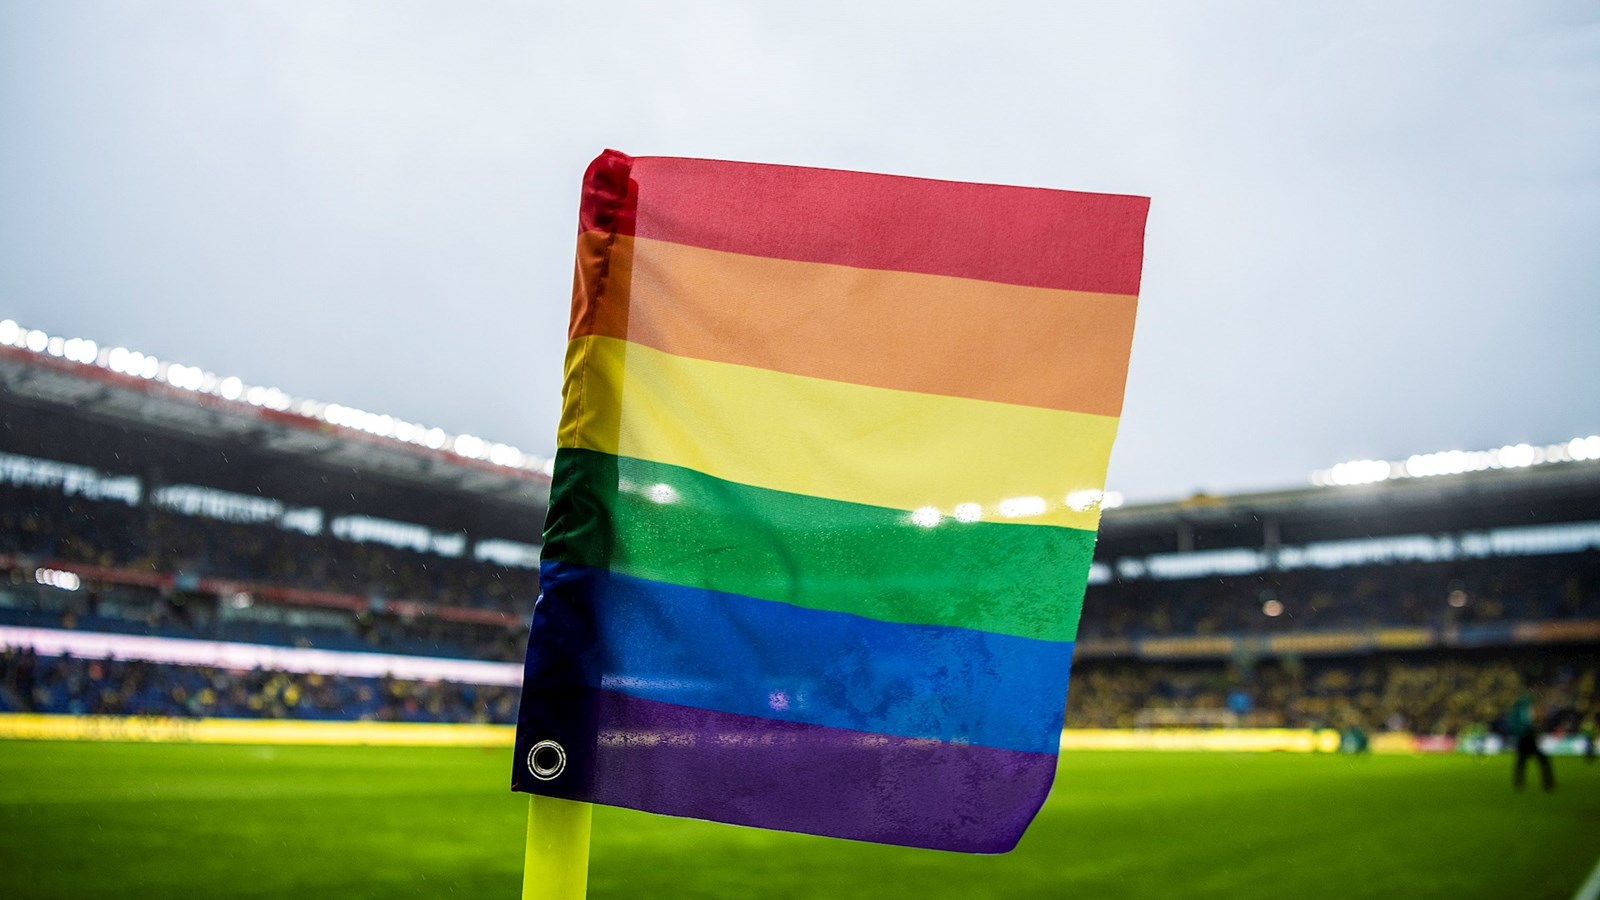 Fodboldstadions i regnbuefarver